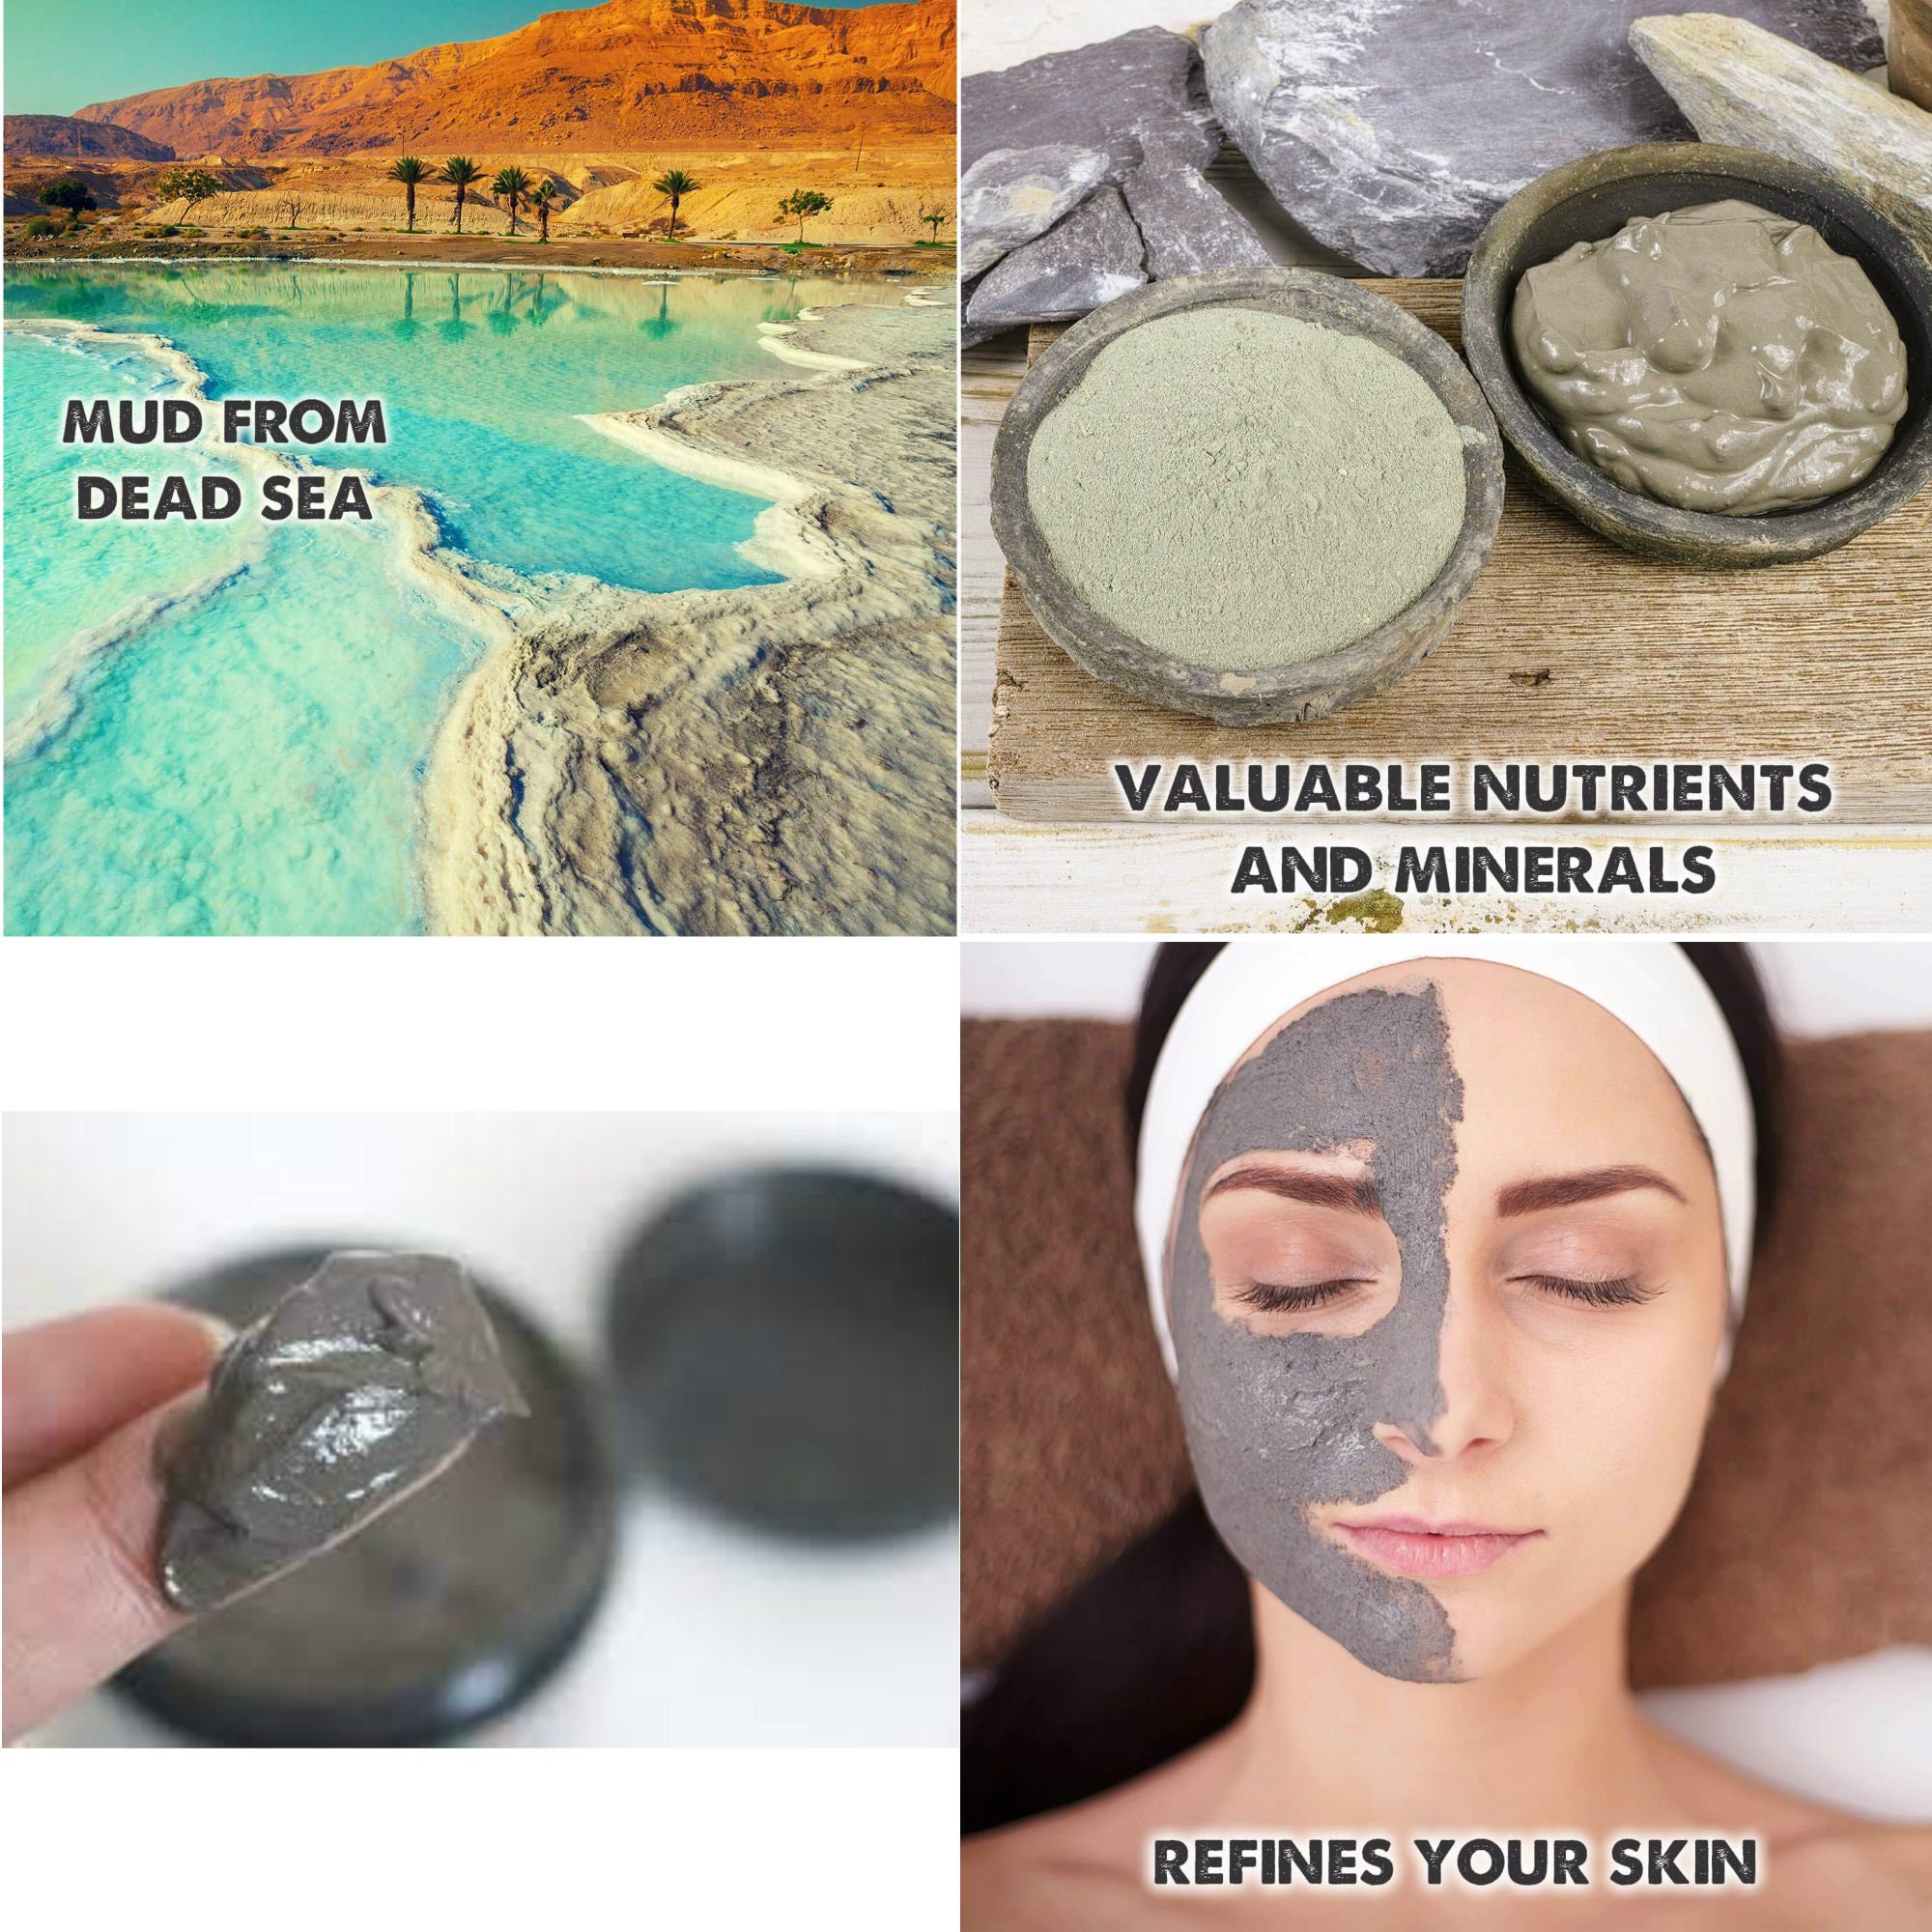 Dead Sea Clay Mud Mask Face Body Wash Anti Acne Black | Etsy